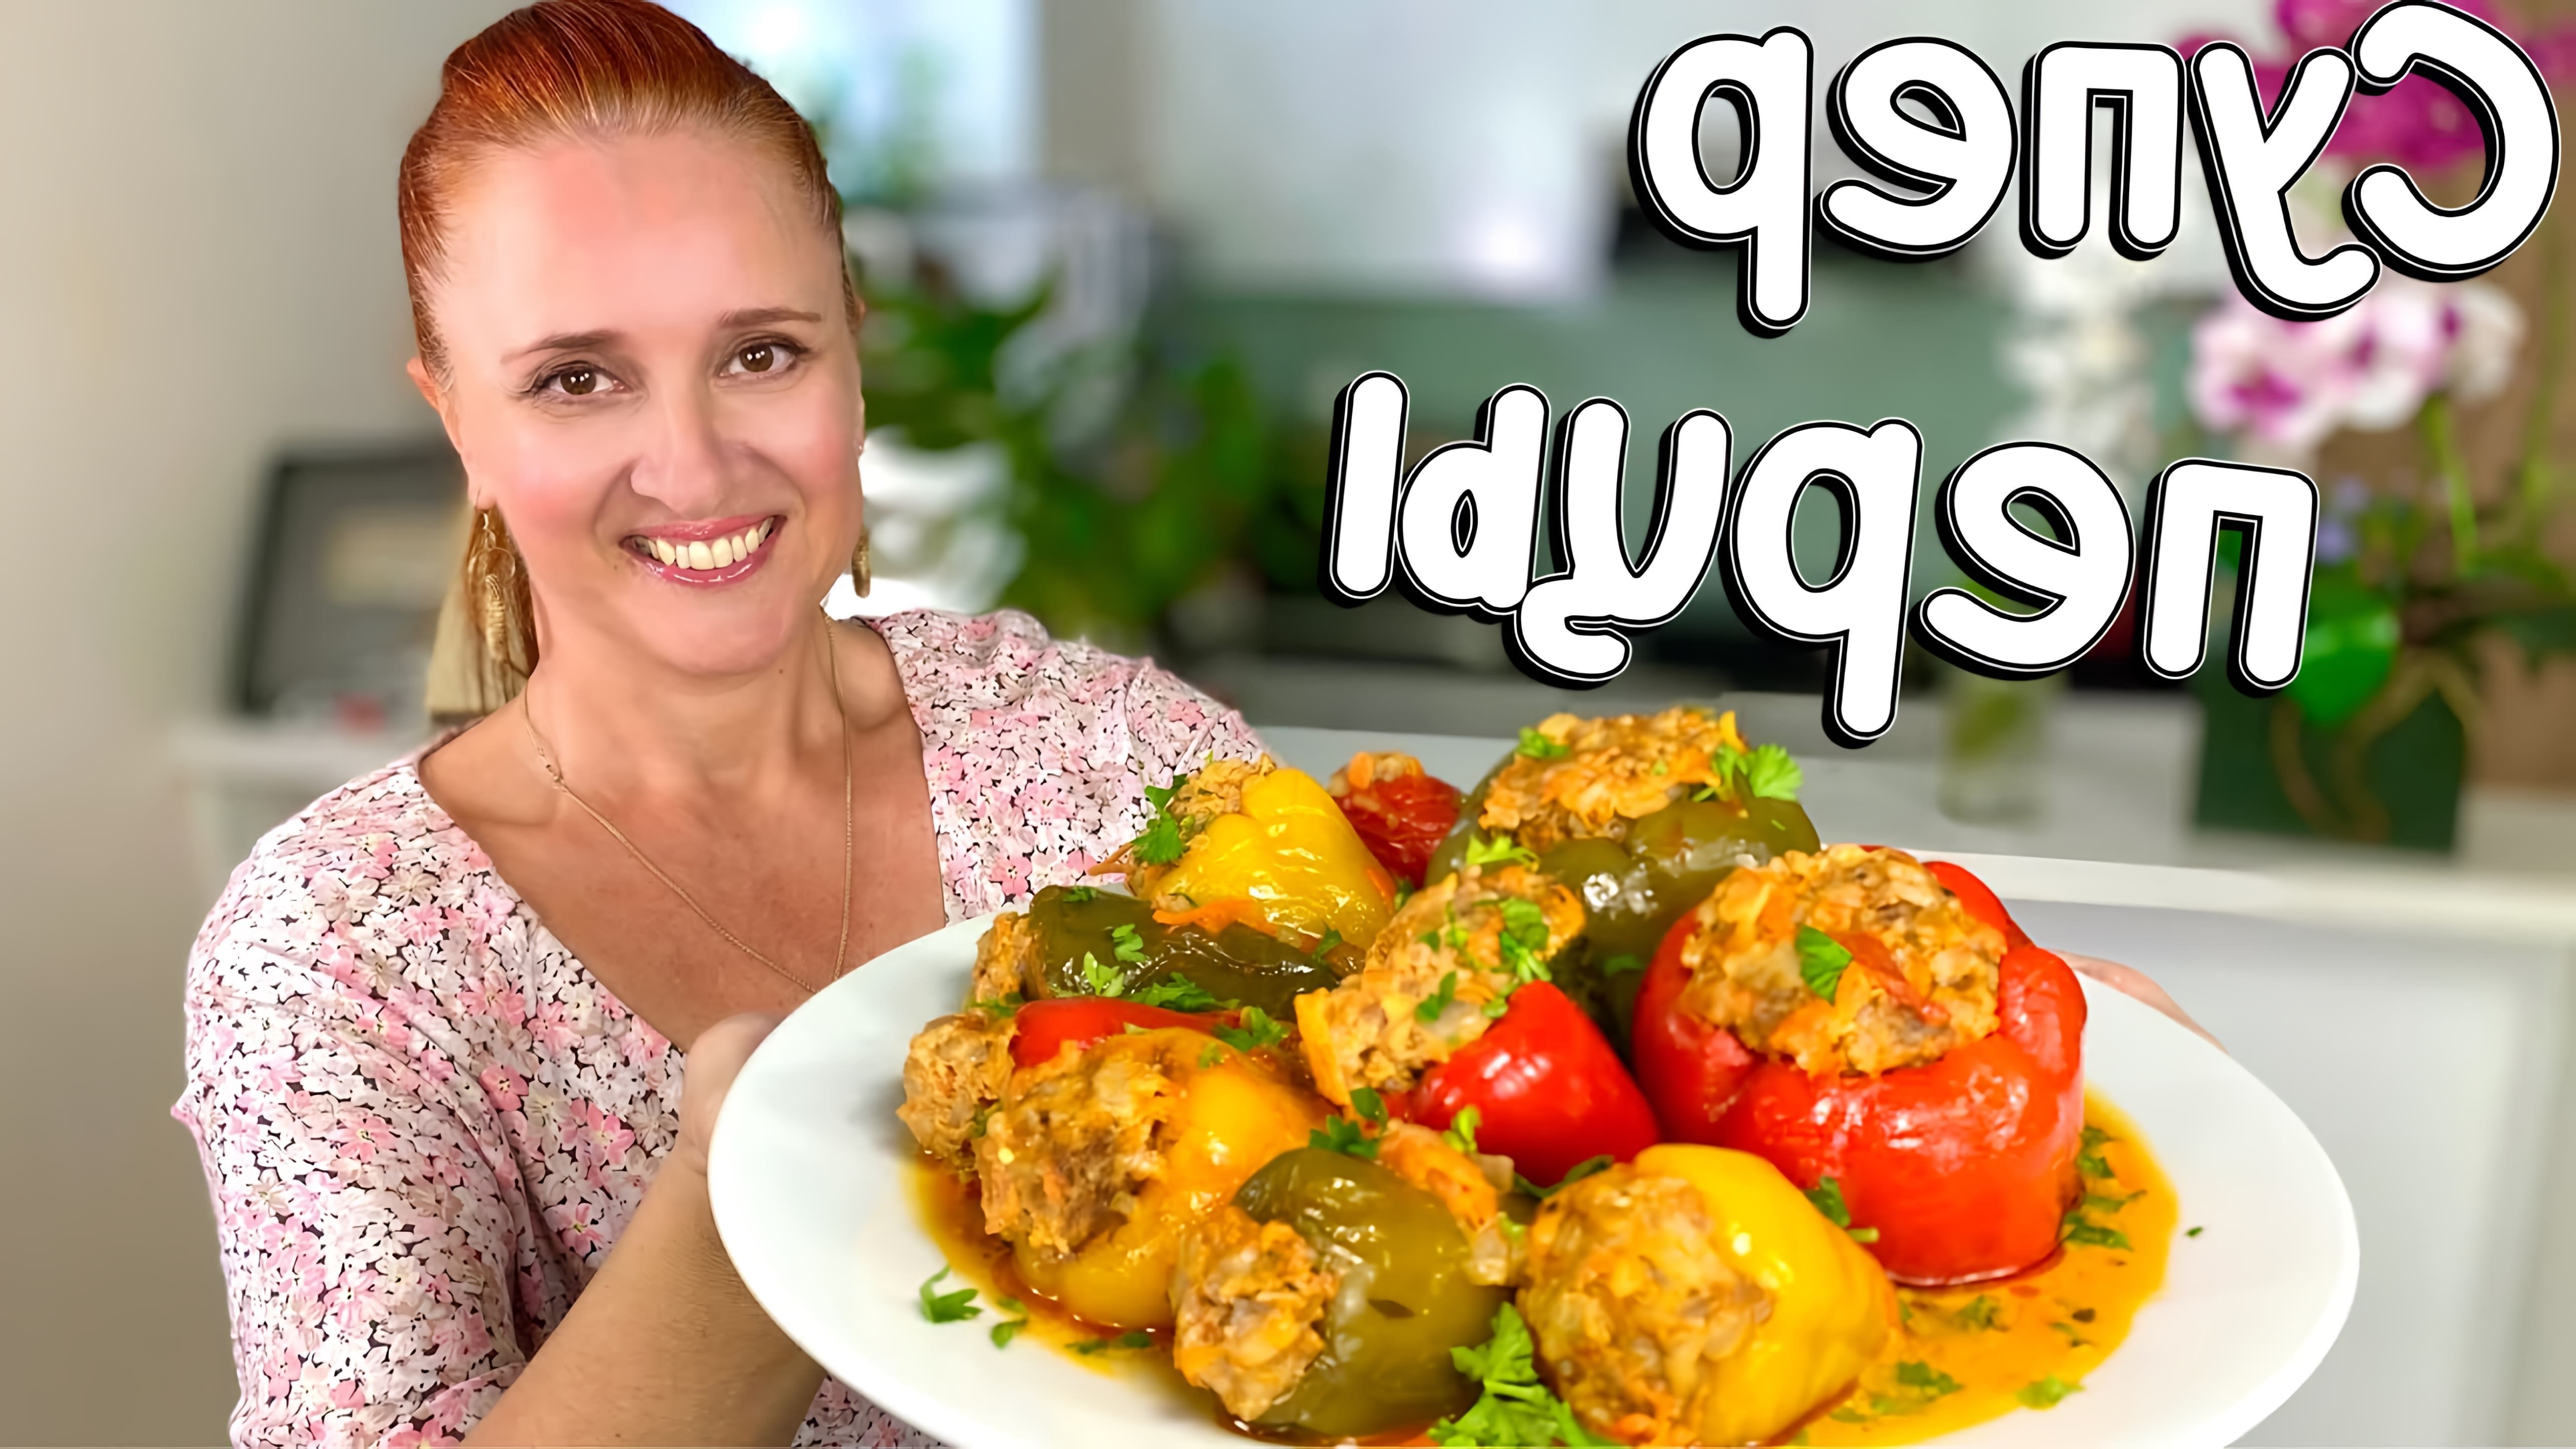 В этом видео демонстрируется рецепт приготовления фаршированных перцев в томатном соусе